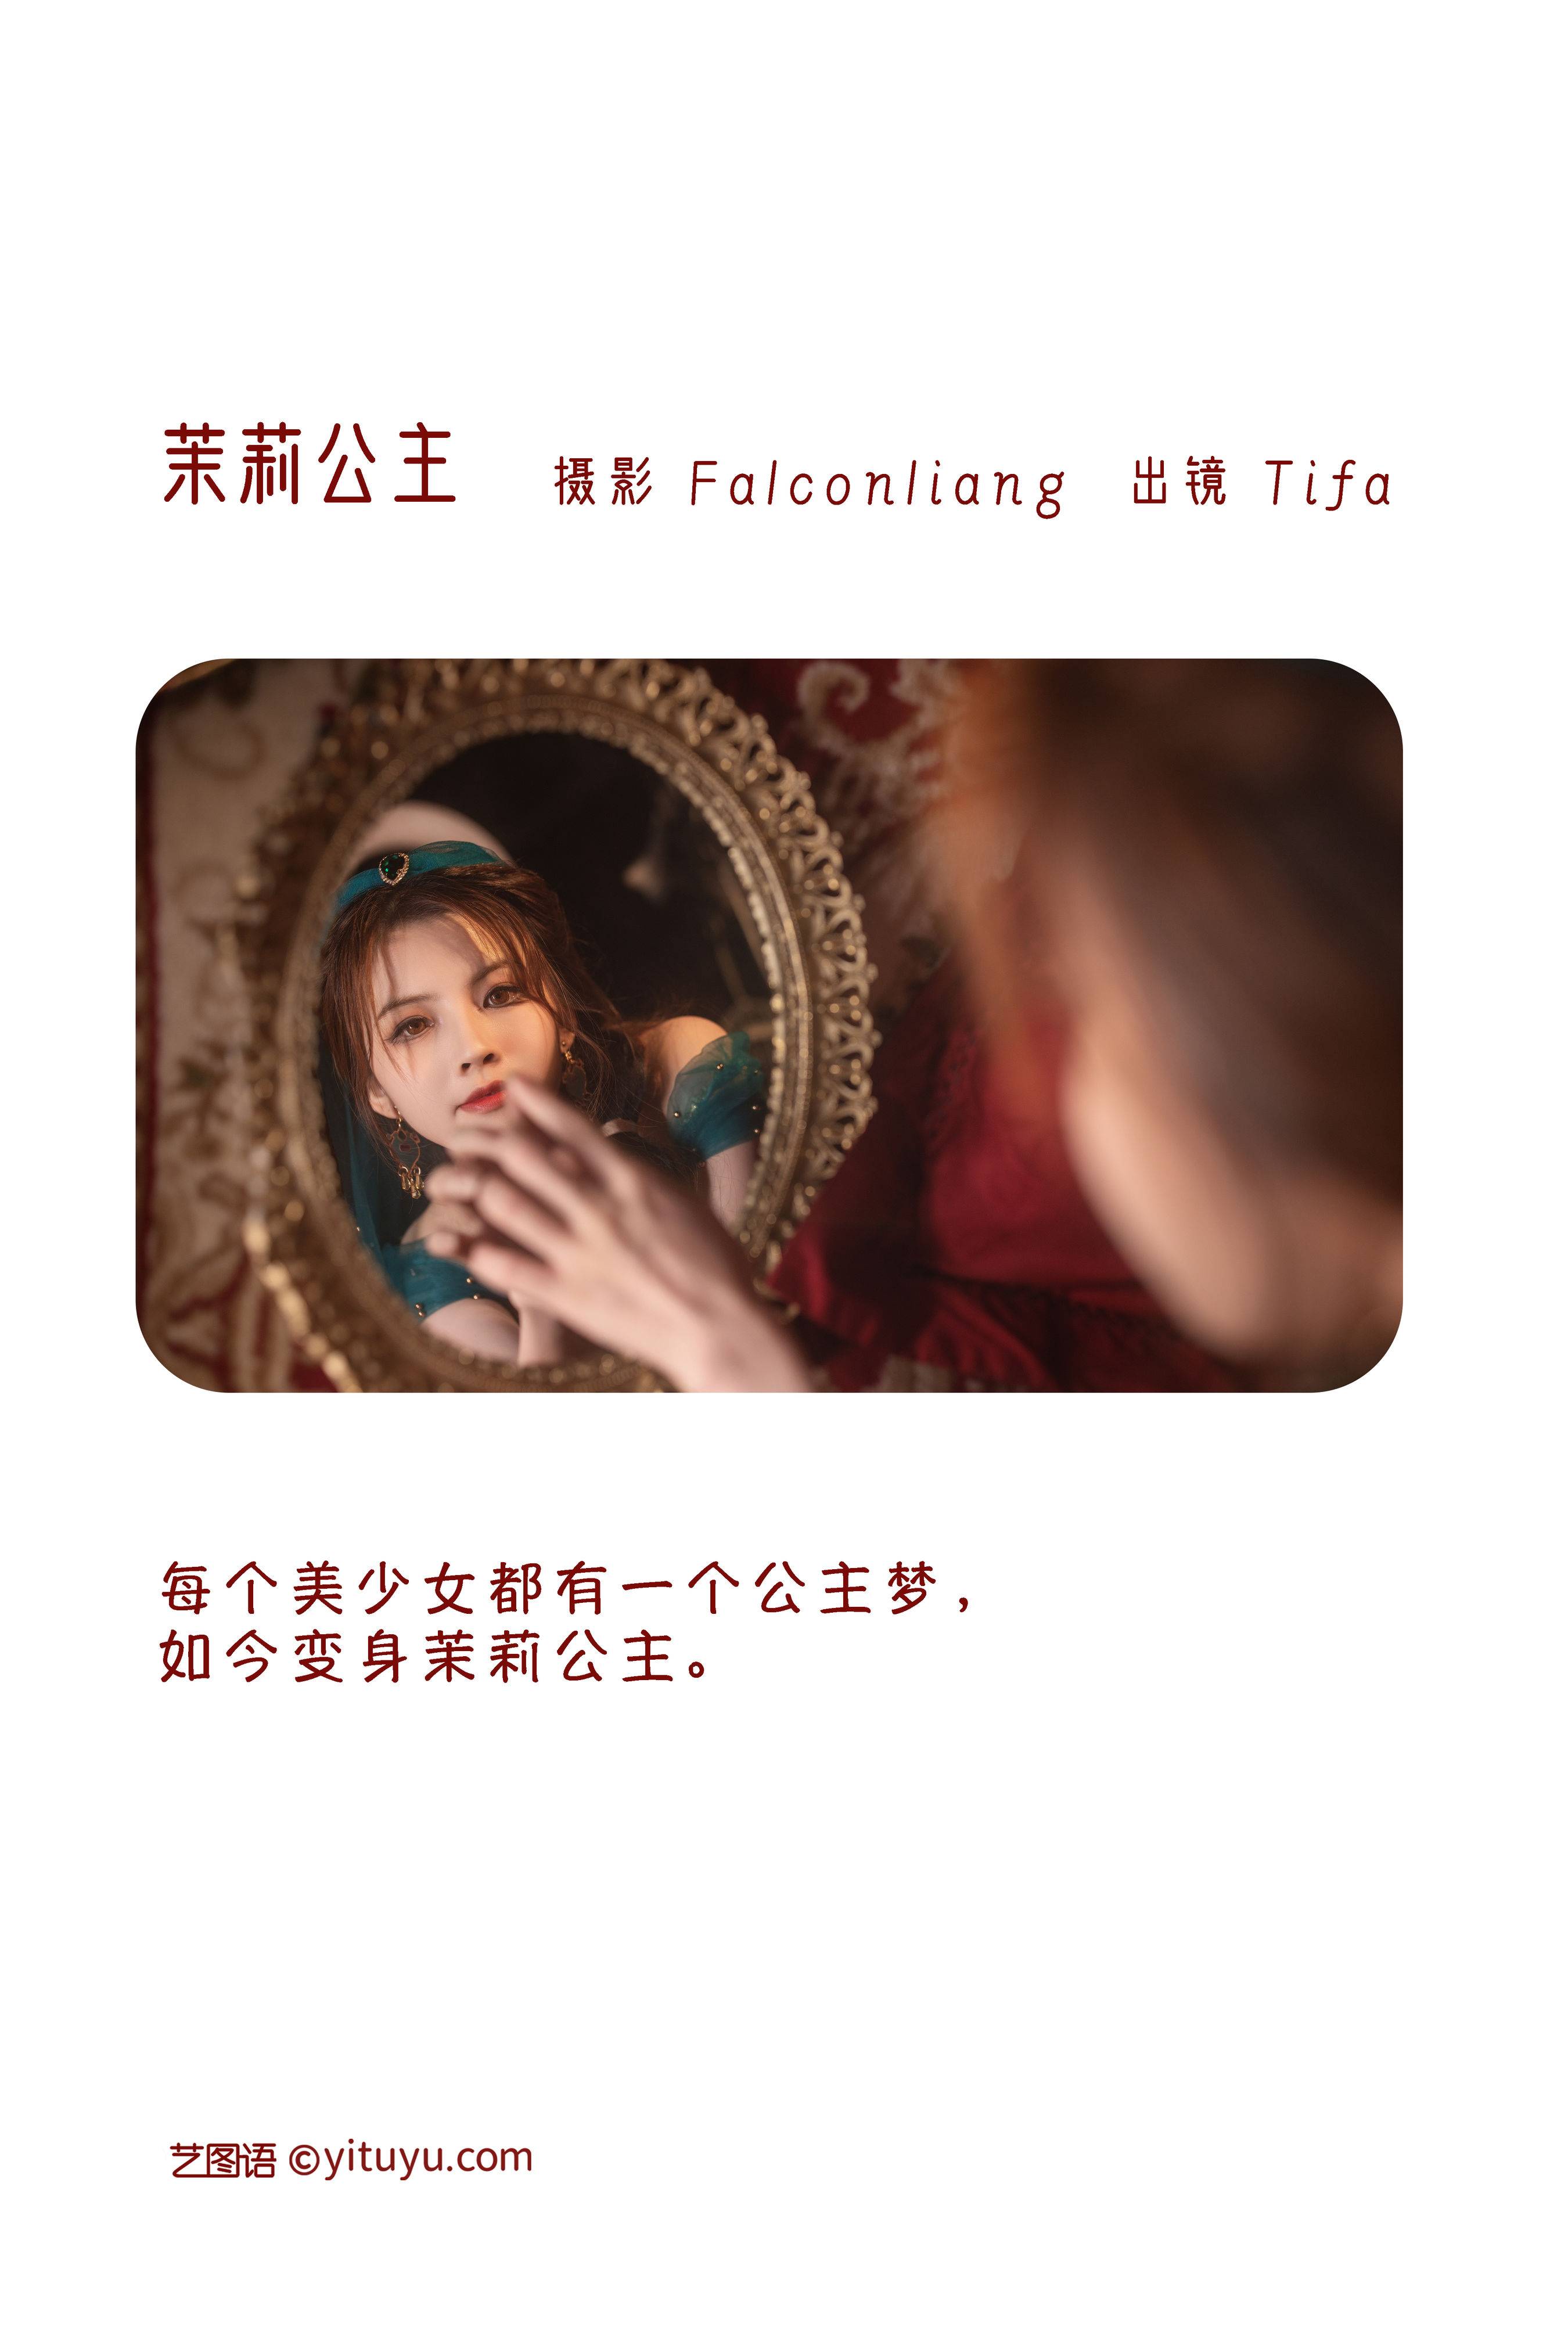 茉莉公主 复古 女神 写真集 民族风 少女&YiTuYu艺图语-1